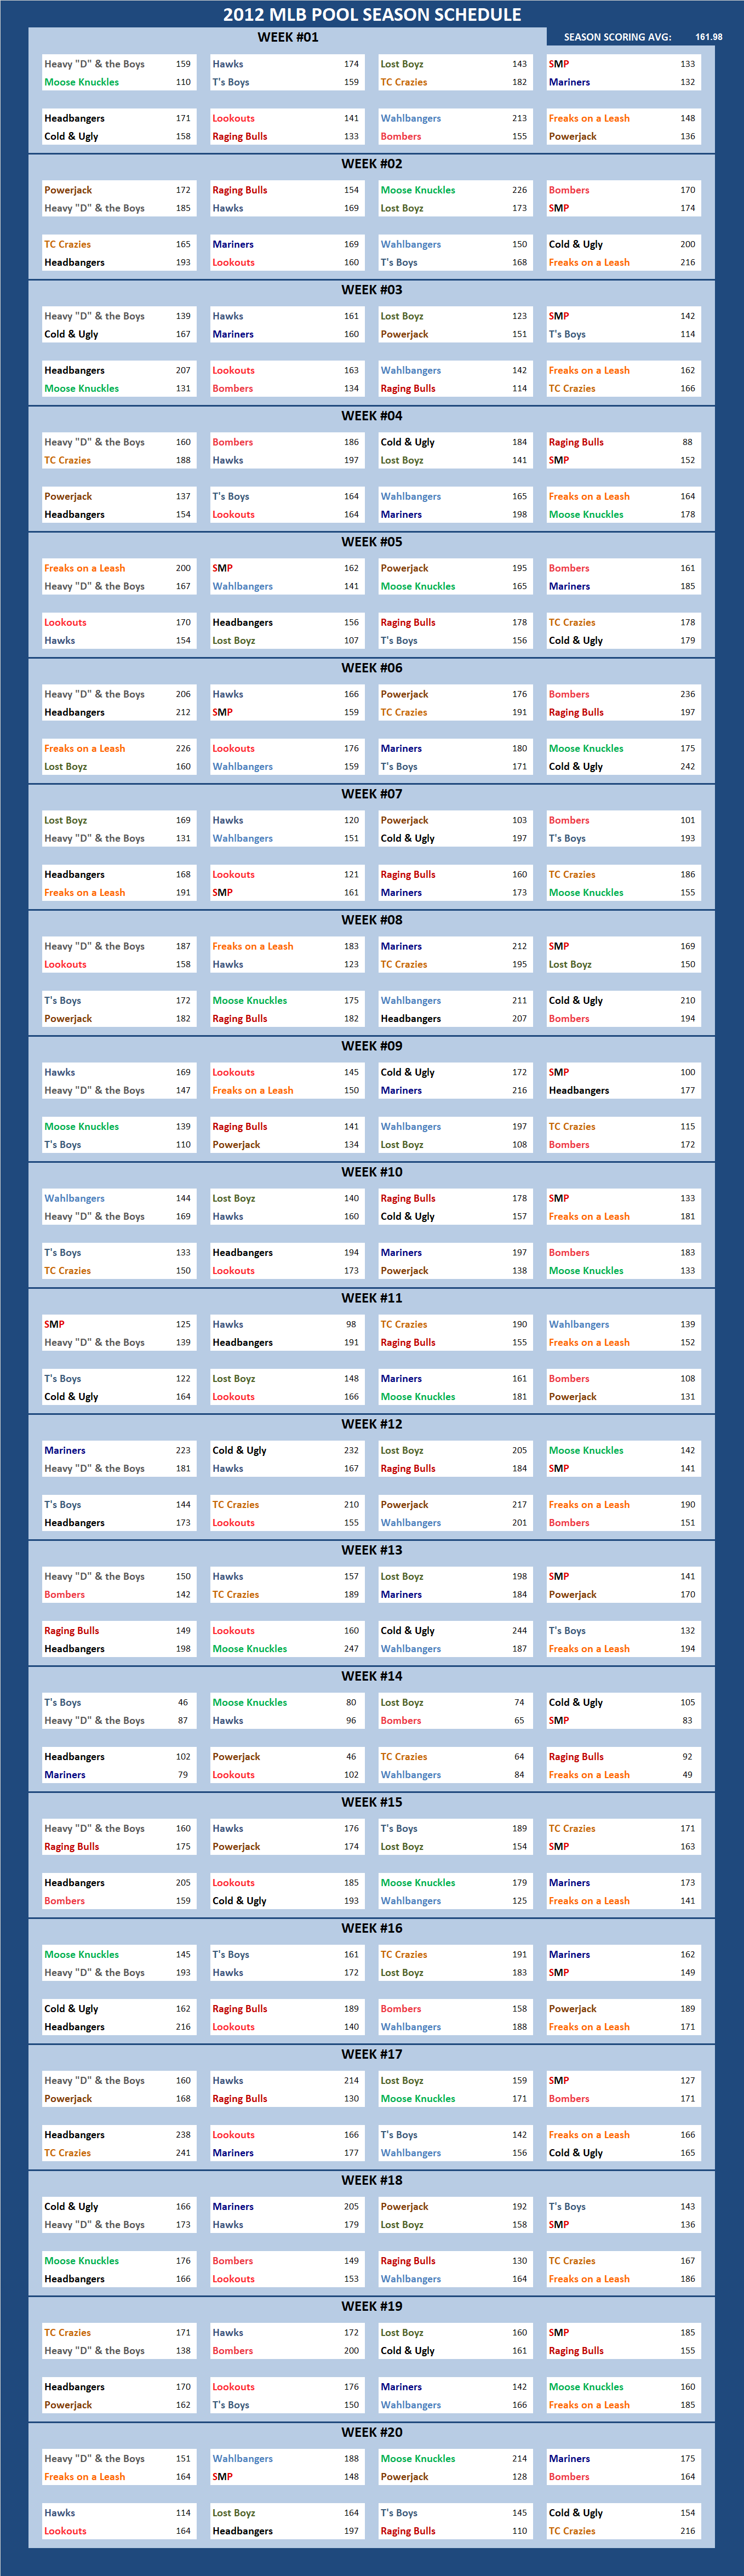 2012 Major League Baseball Pool Season Schedule